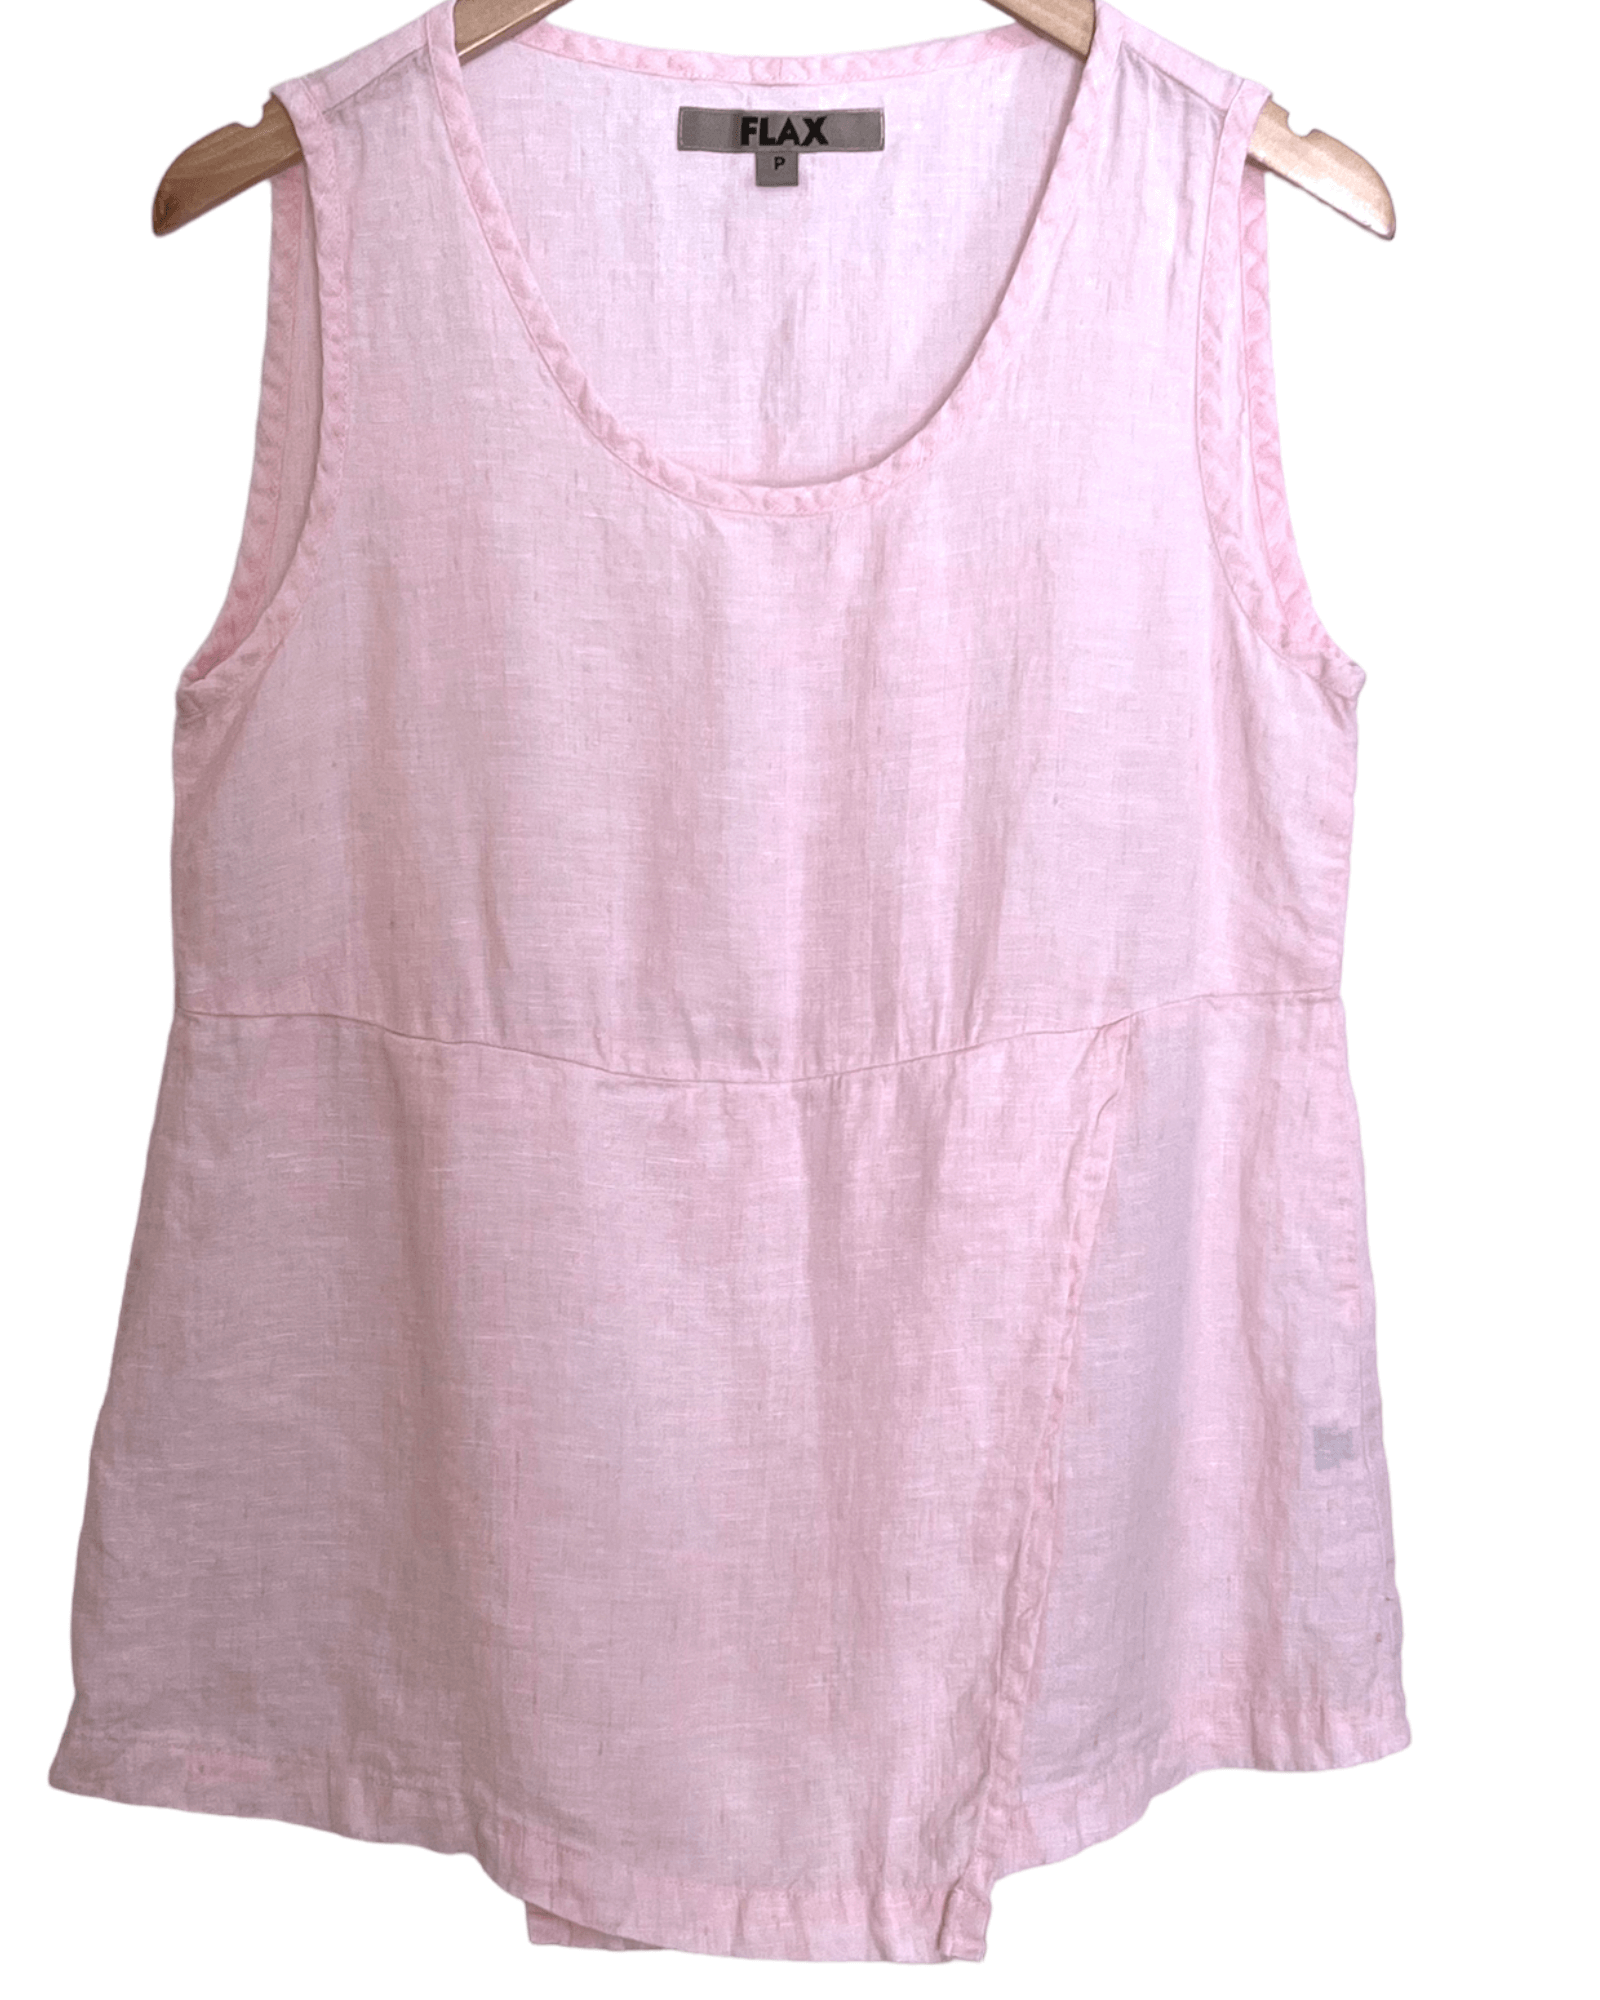 Cool Summer FLAX carnation pink flax linen sleeveless top